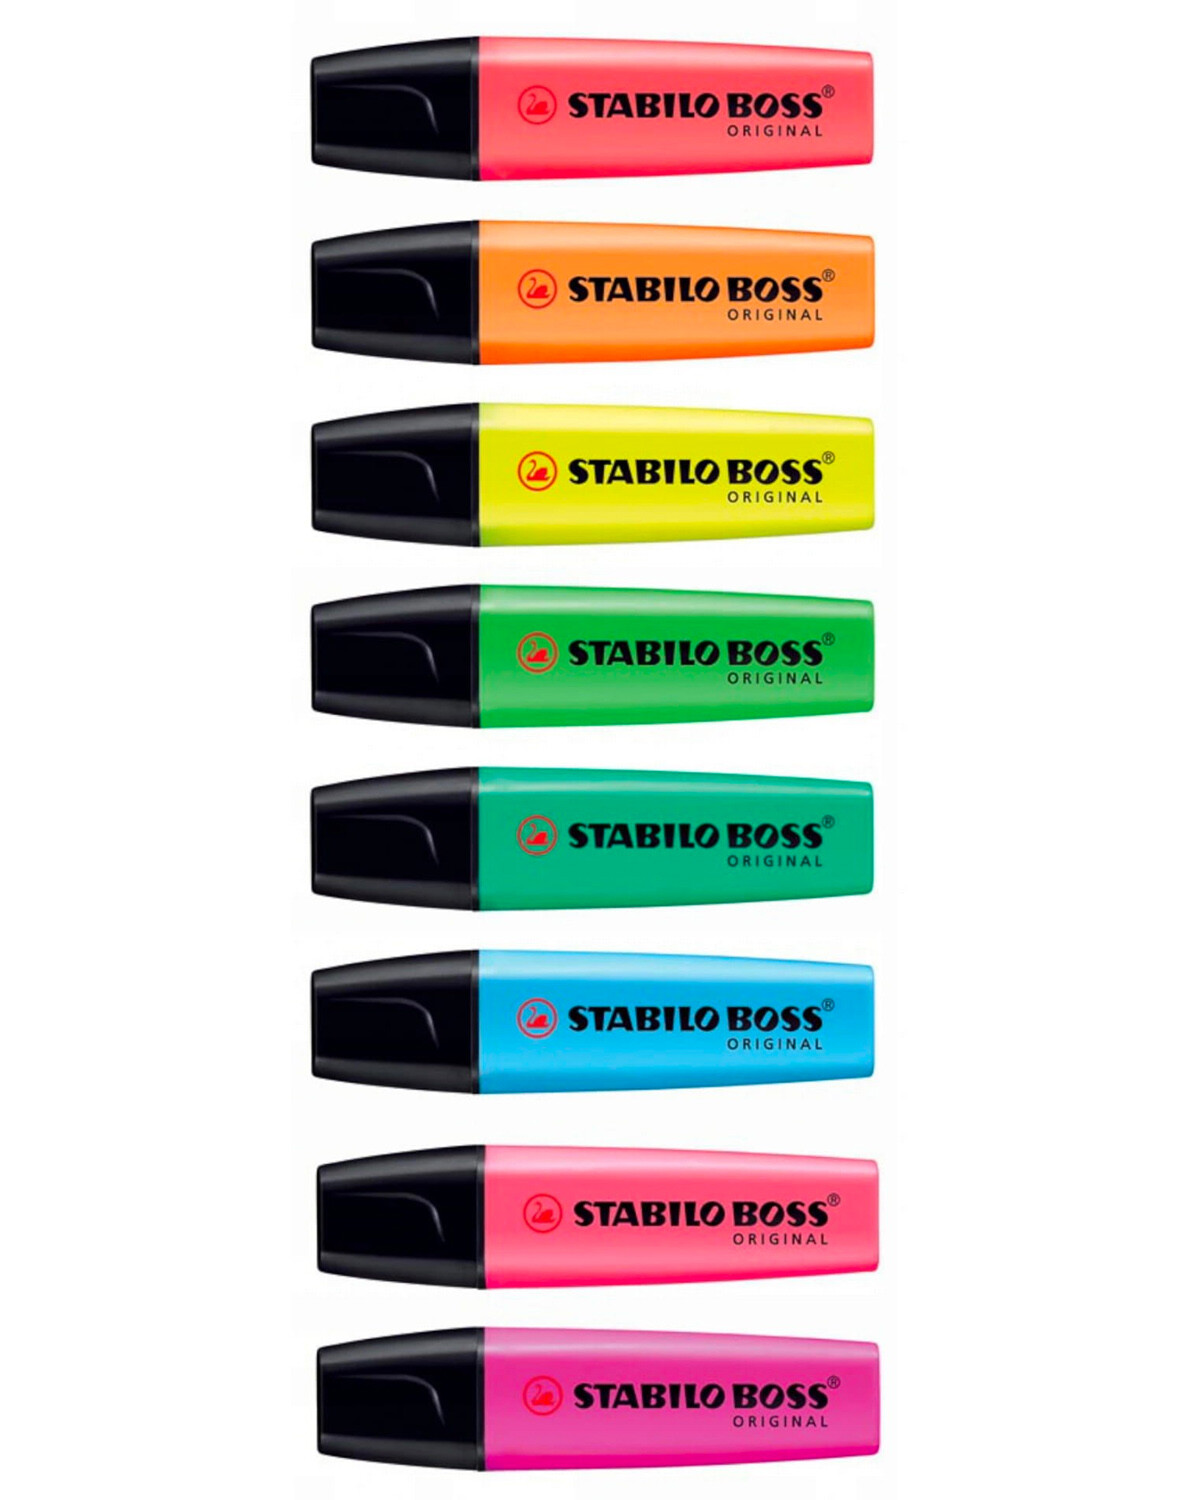 STABILO BOSS - Juego de marcadores originales, 8 colores